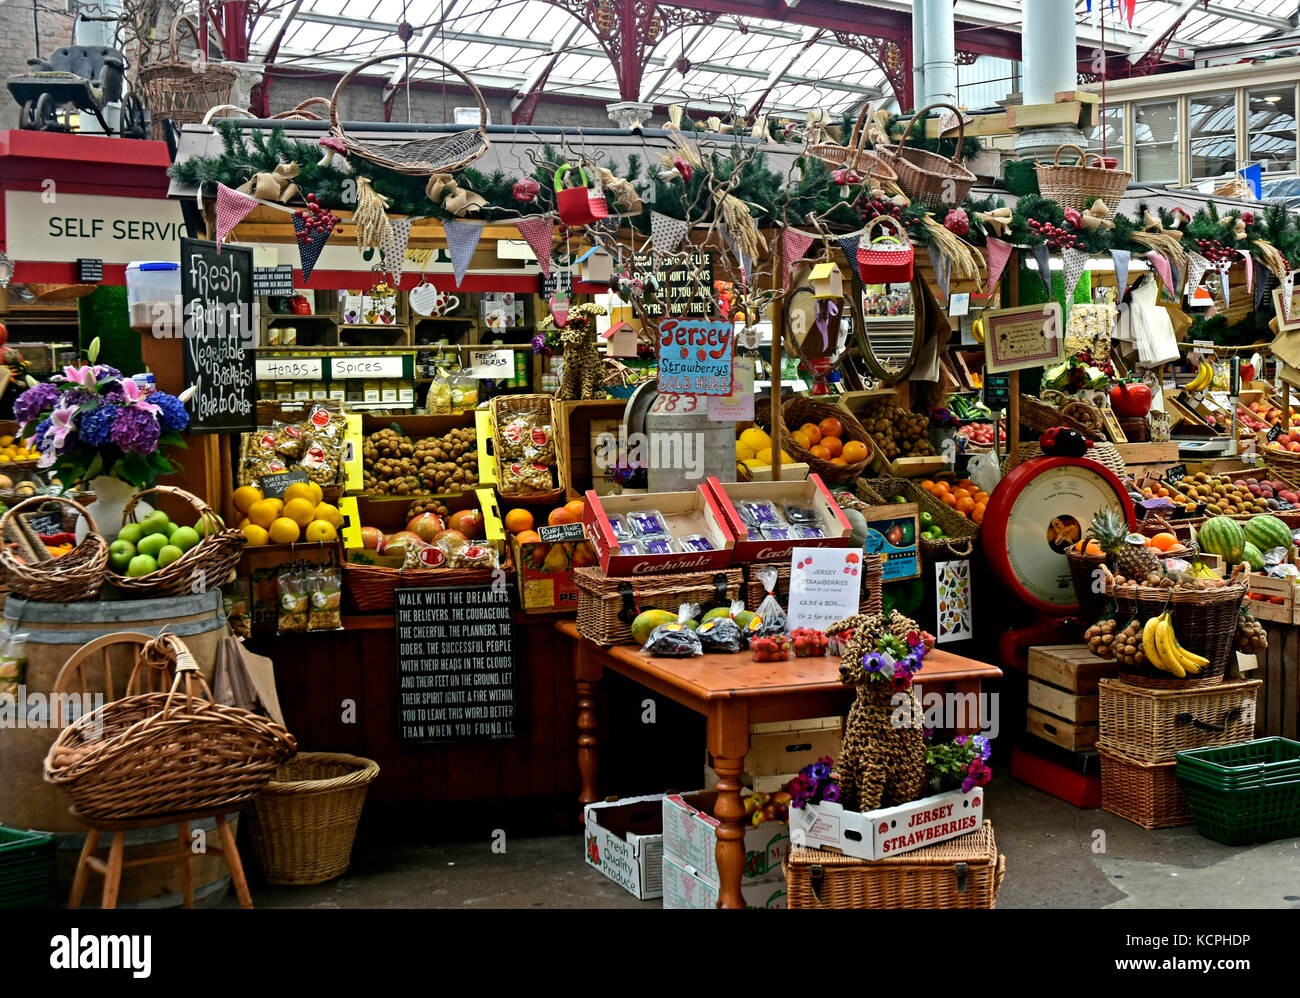 Mercado central - St Helier - Canal isles - mercado cubierto: circa 1882 - frutas verduras flores - productos locales - trabajo - hierro victoriana tragaluz Foto de stock